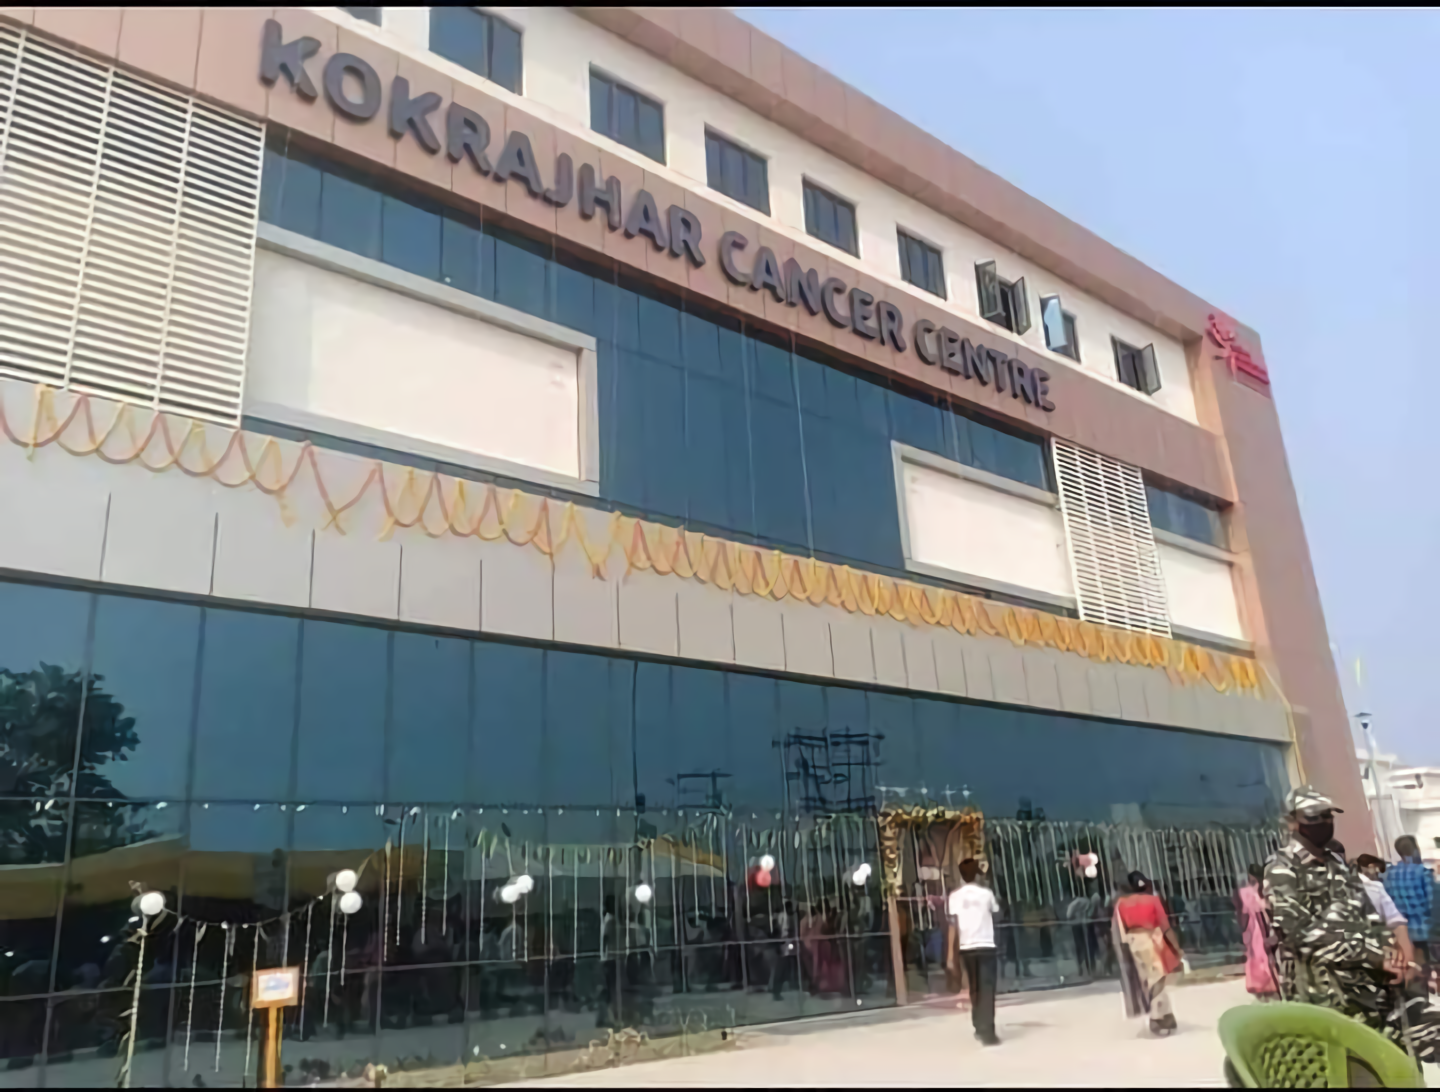 Kokrajhar Cancer Care Hospital